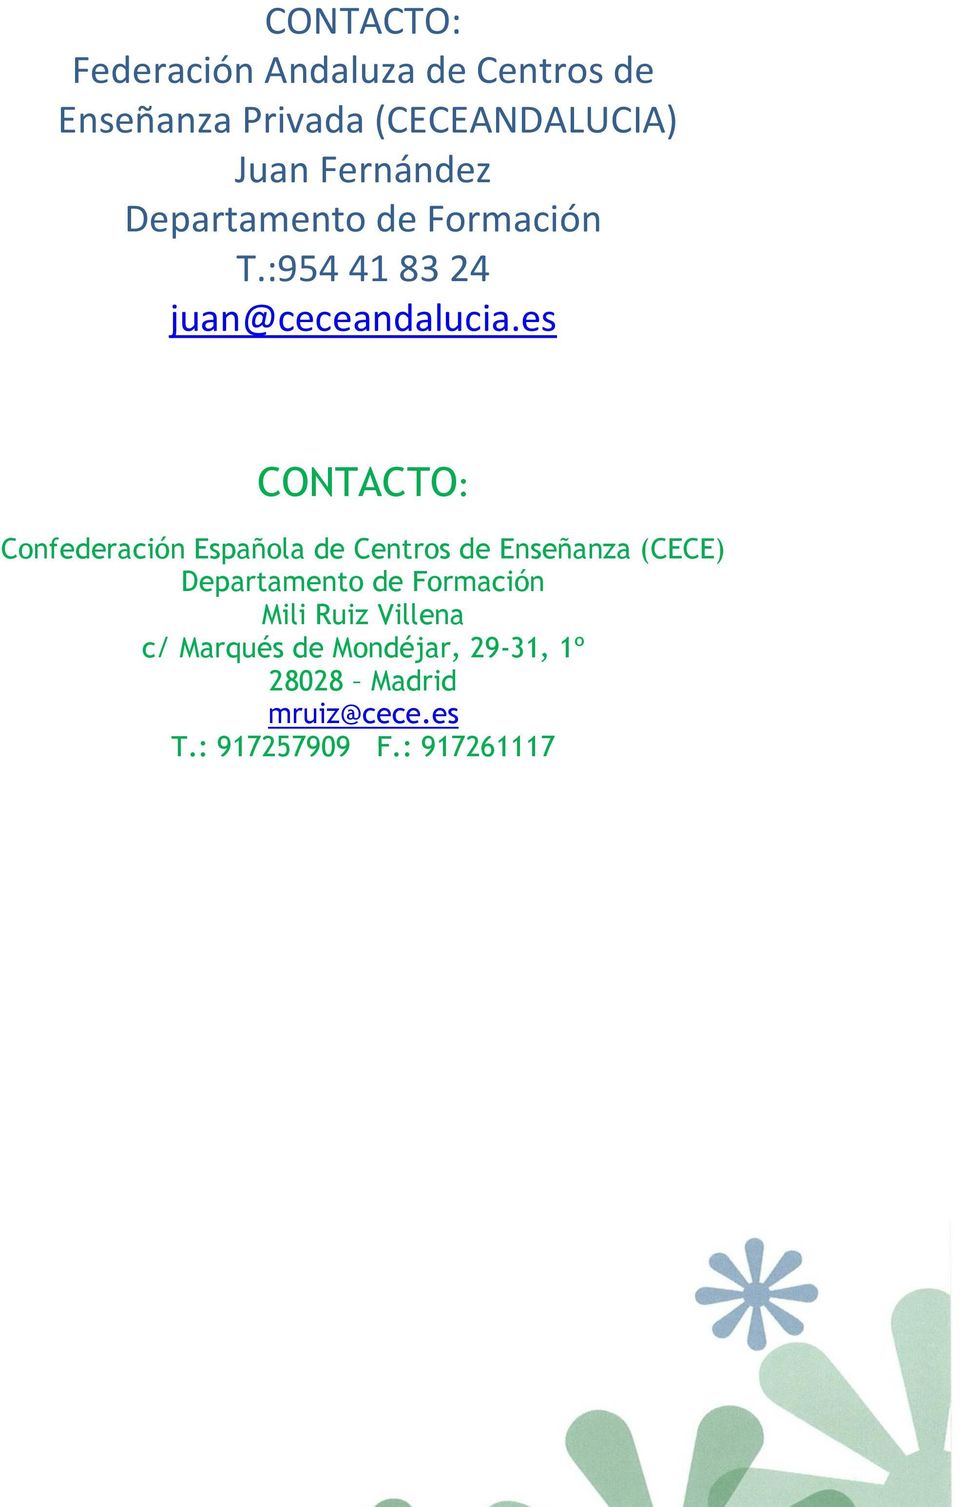 es CONTACTO: Confederación Española de Centros de Enseñanza (CECE) Departamento de